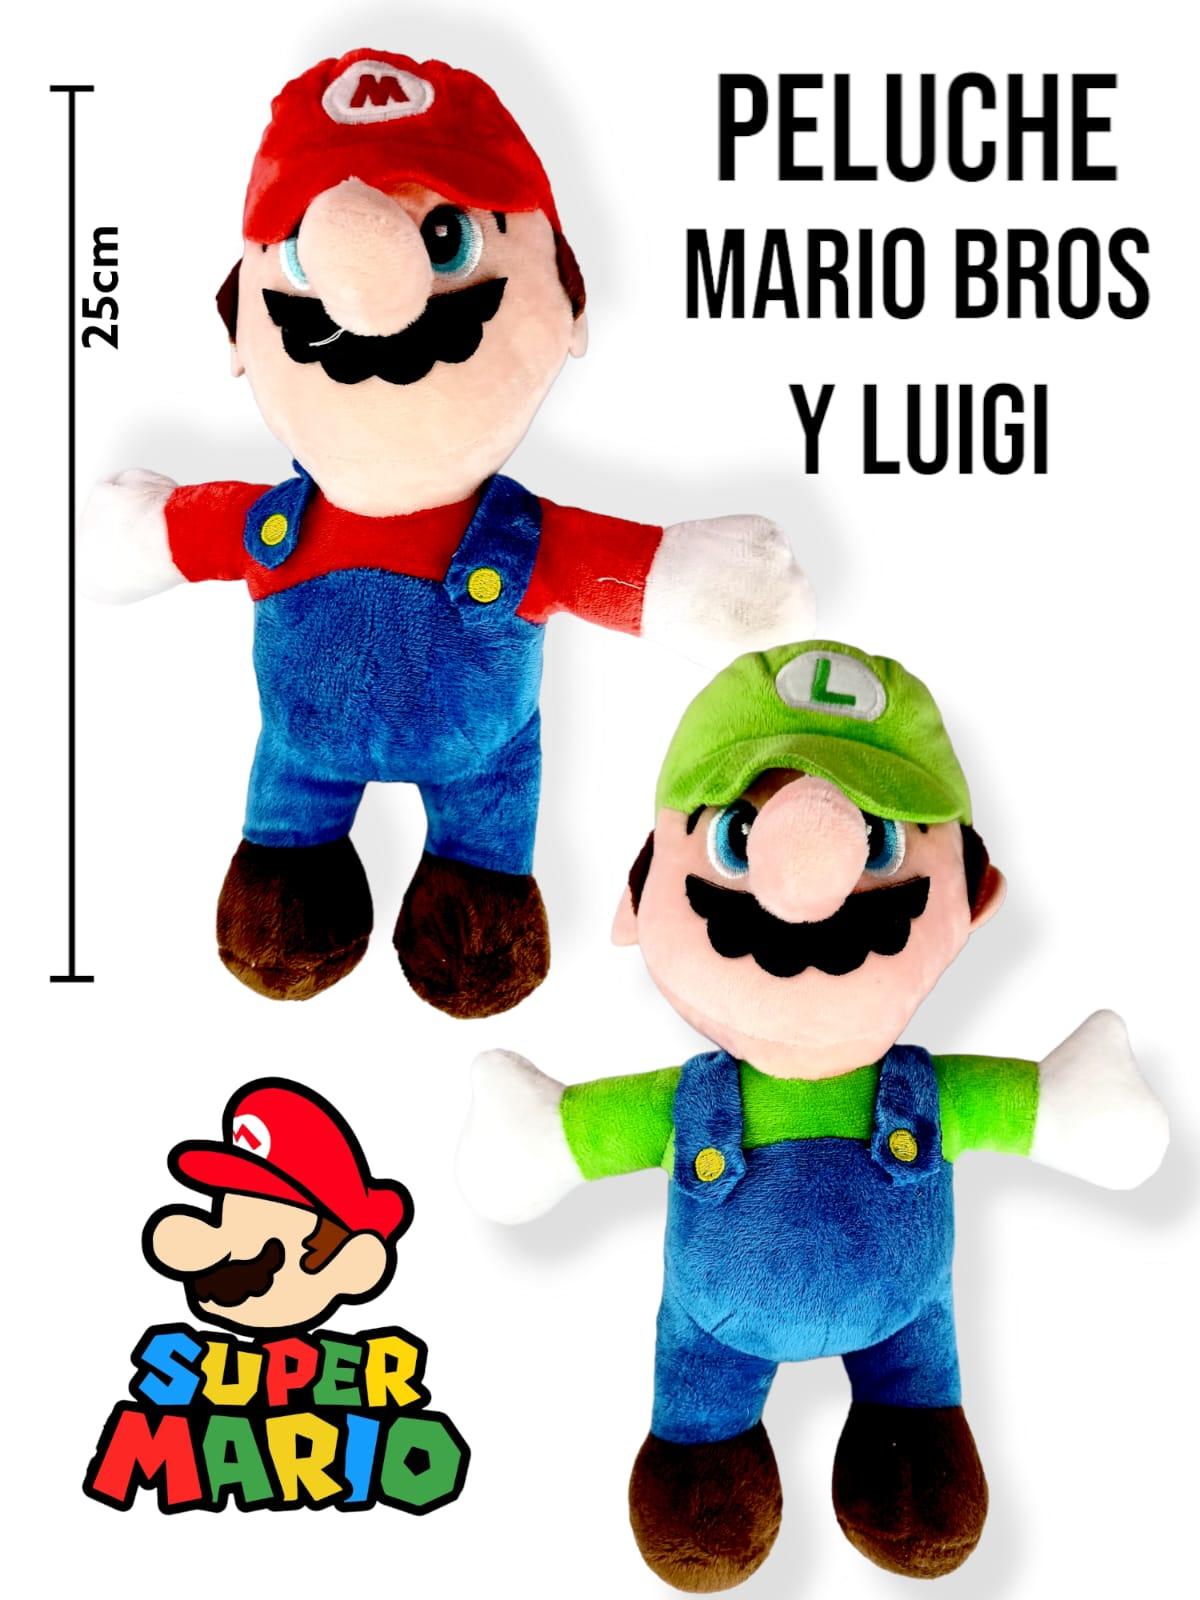 Peluche Mario Bros cuerpo sublimado 20 cm